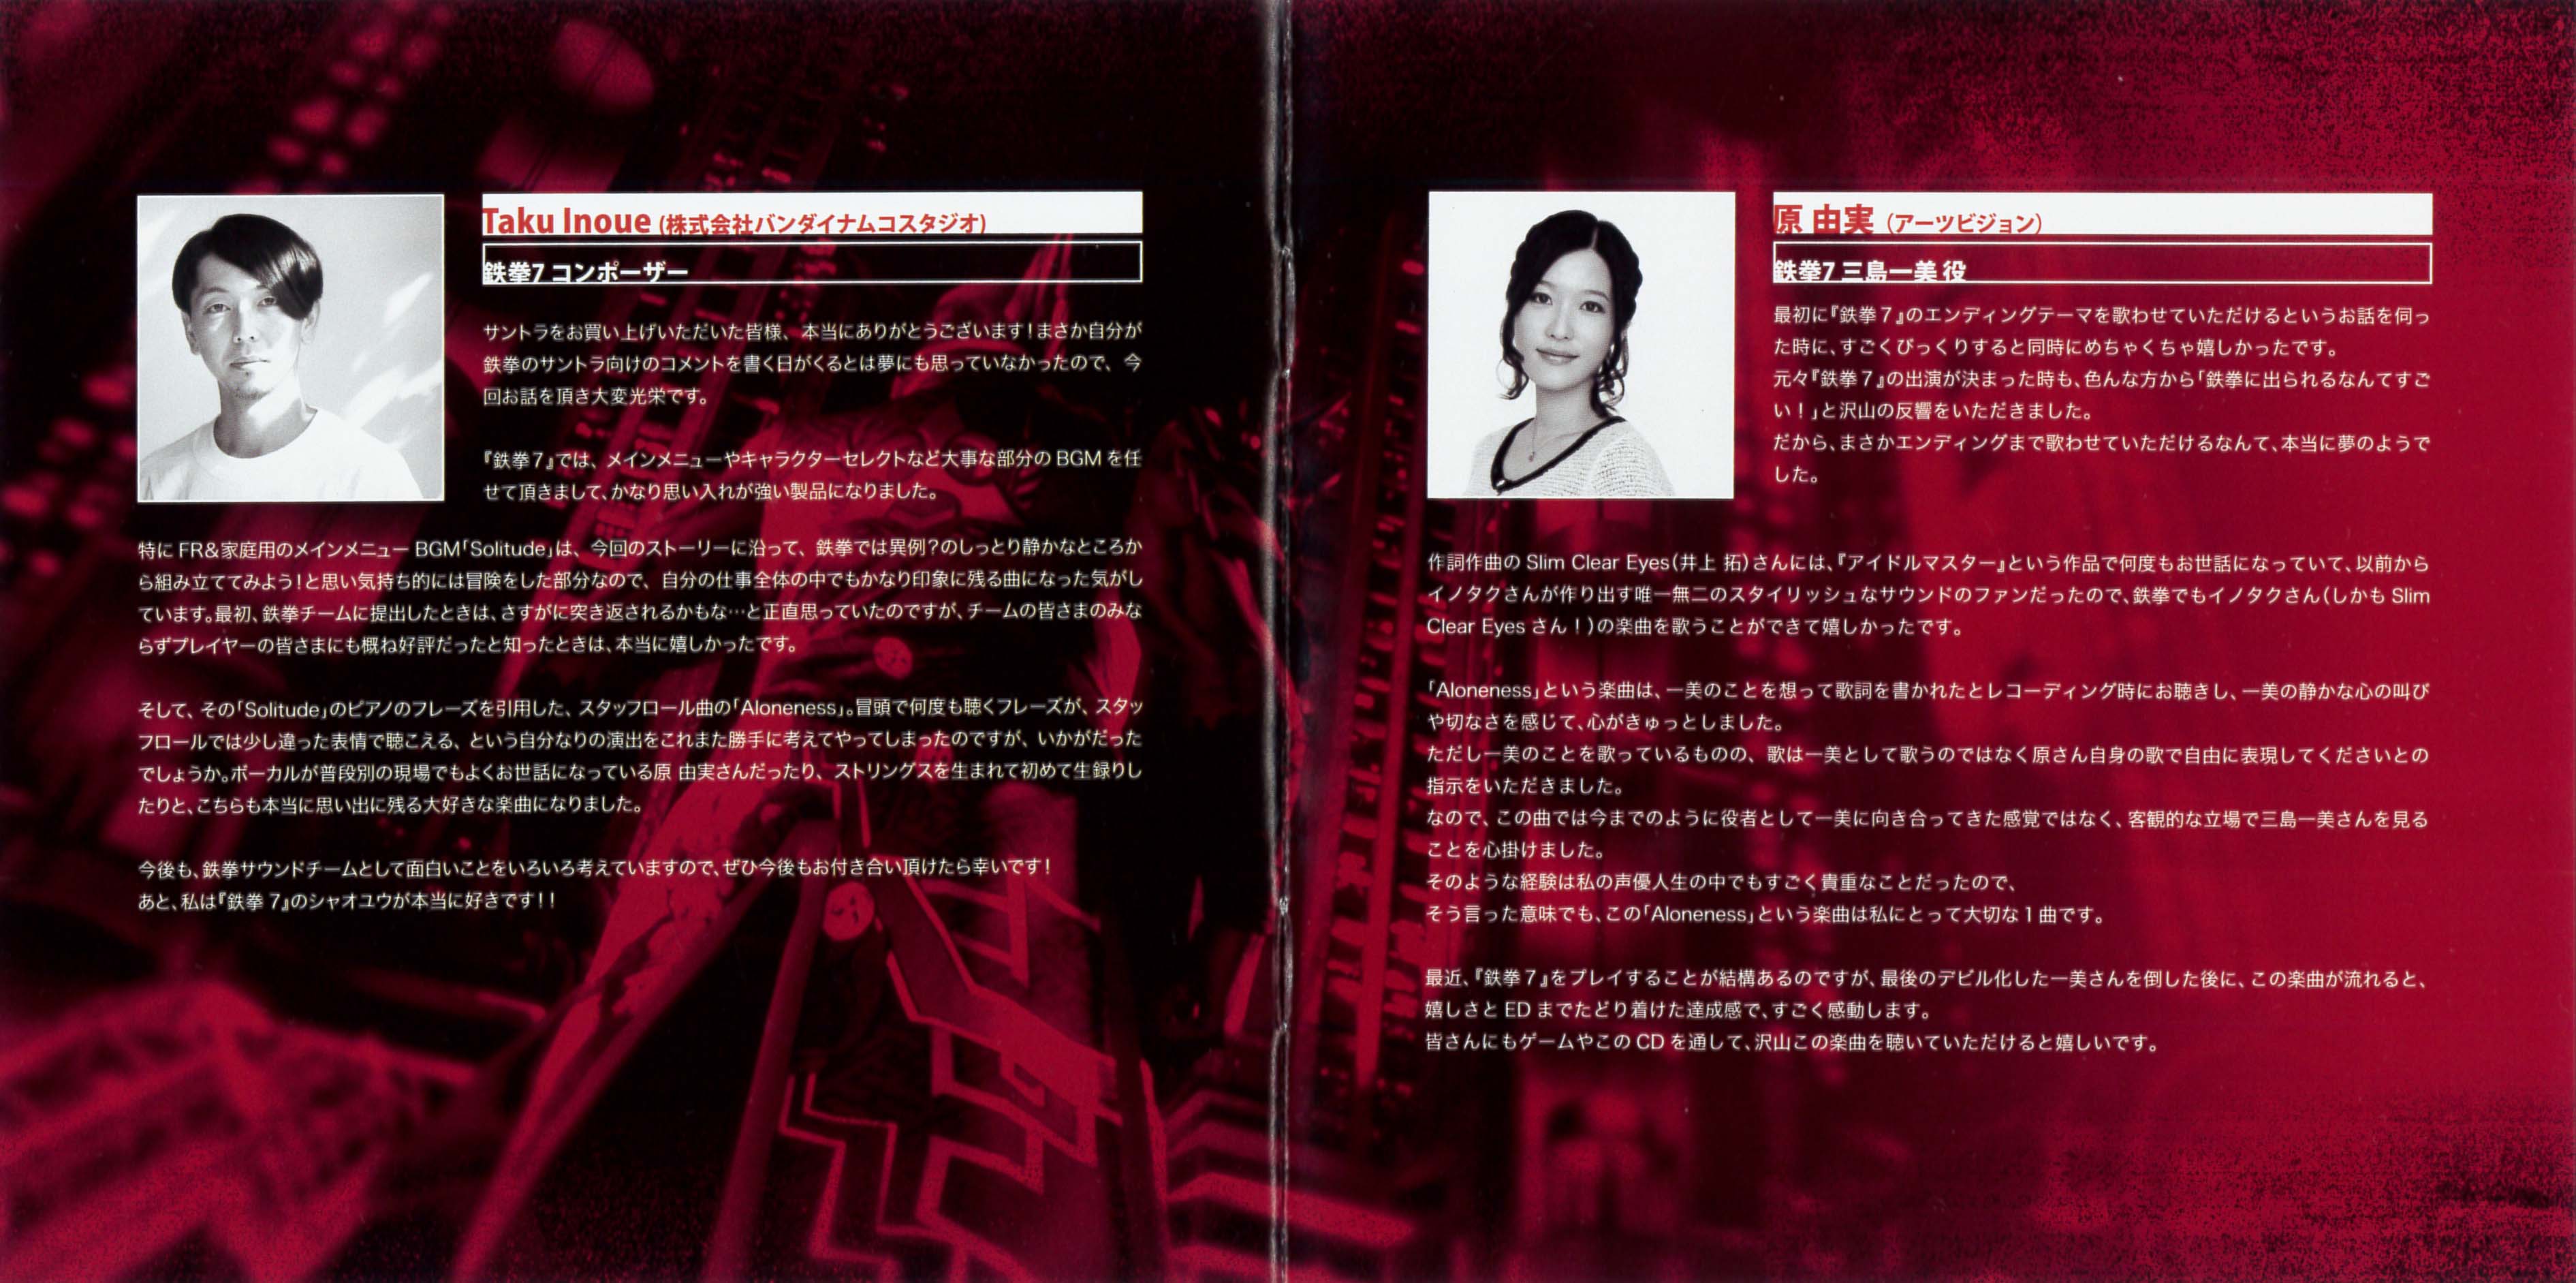 Tekken 7 Soundtrack Plus Mp3 Download Tekken 7 Soundtrack Plus Soundtracks For Free